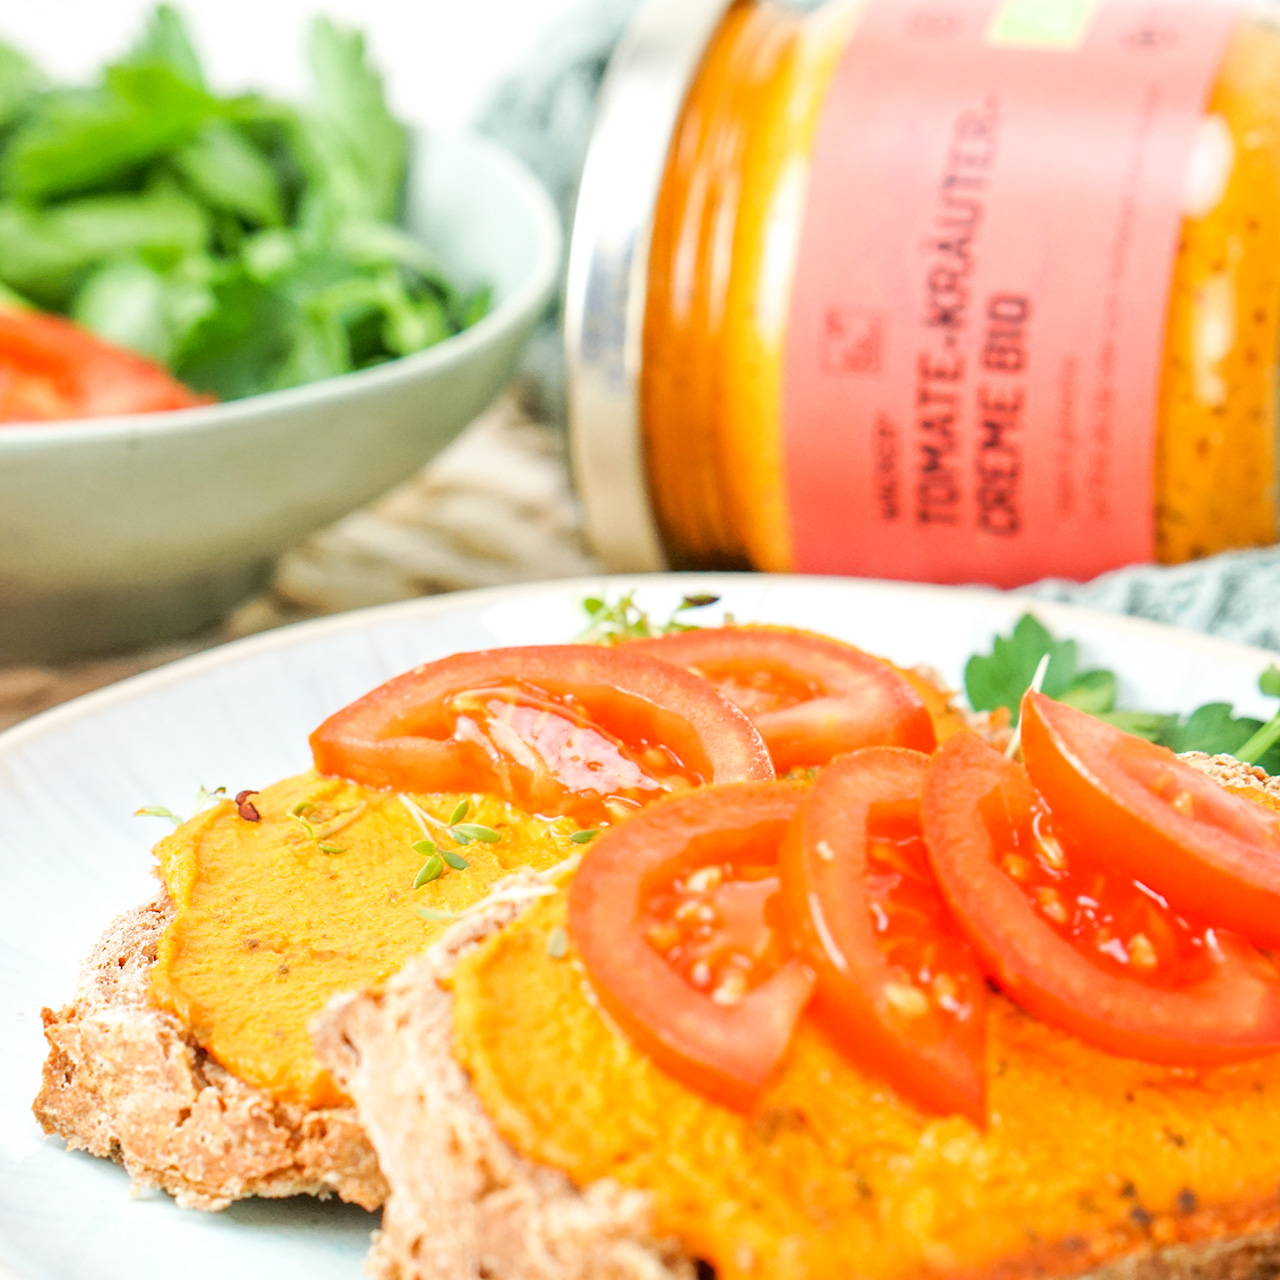 Wacker Tomate-Kräuter-Creme Bio: Als Aufstrich, Dip & zum Kochen